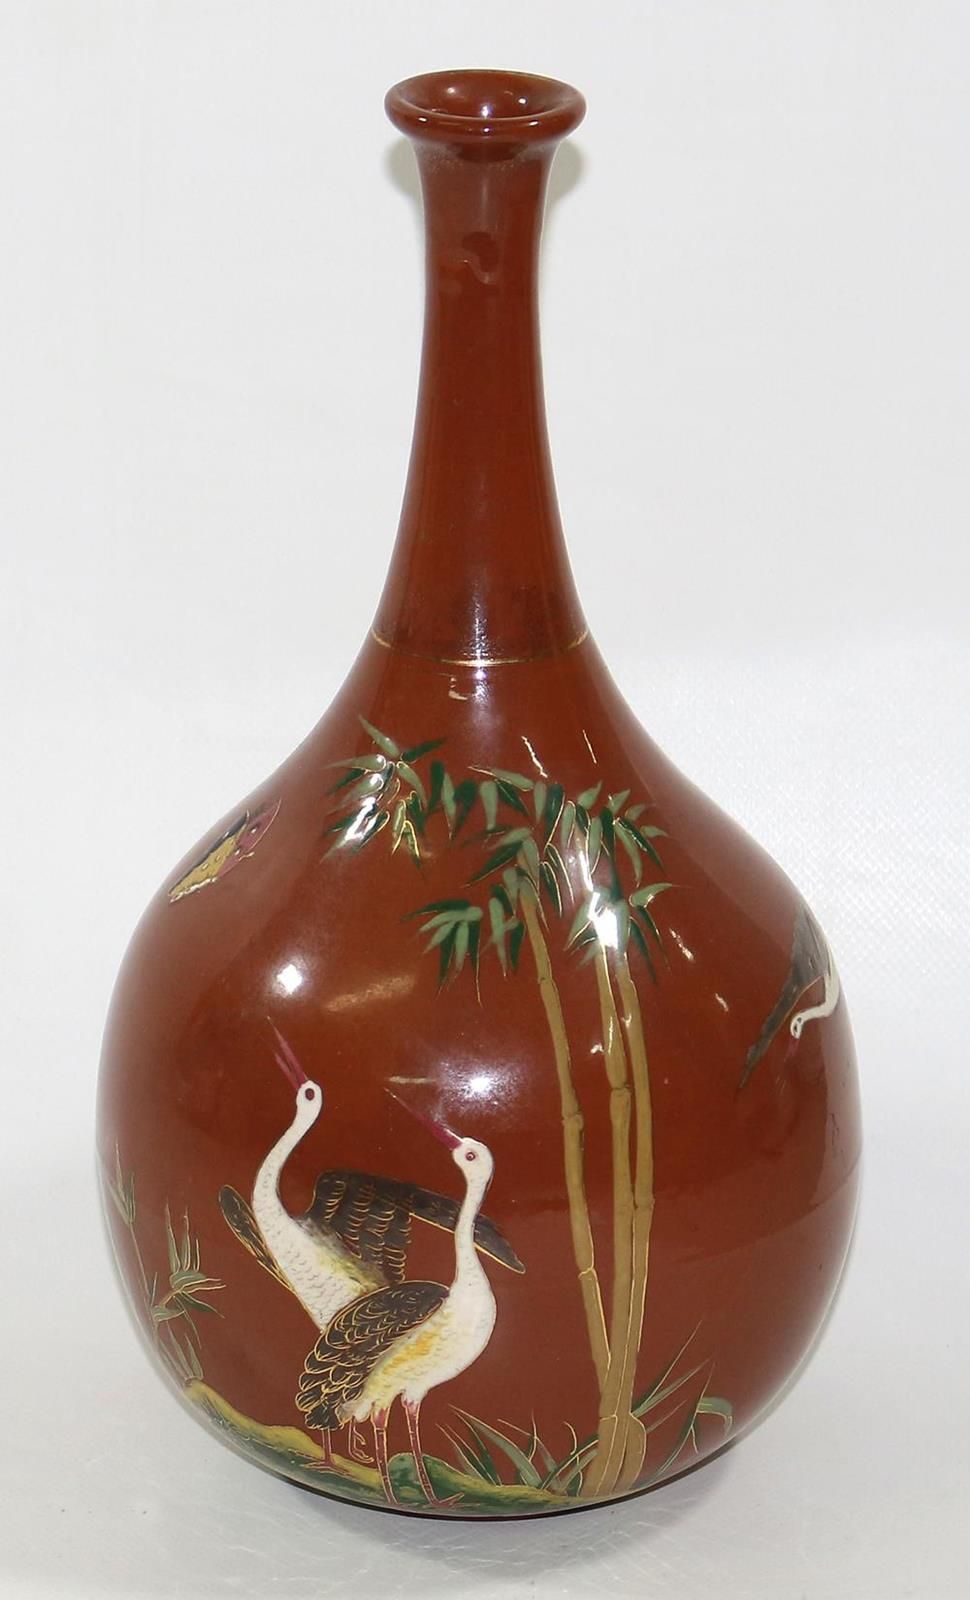 中式风格的瓷器花瓶。腹式花瓶，末端呈喇叭状。釉面粘土碎片上有仙鹤 